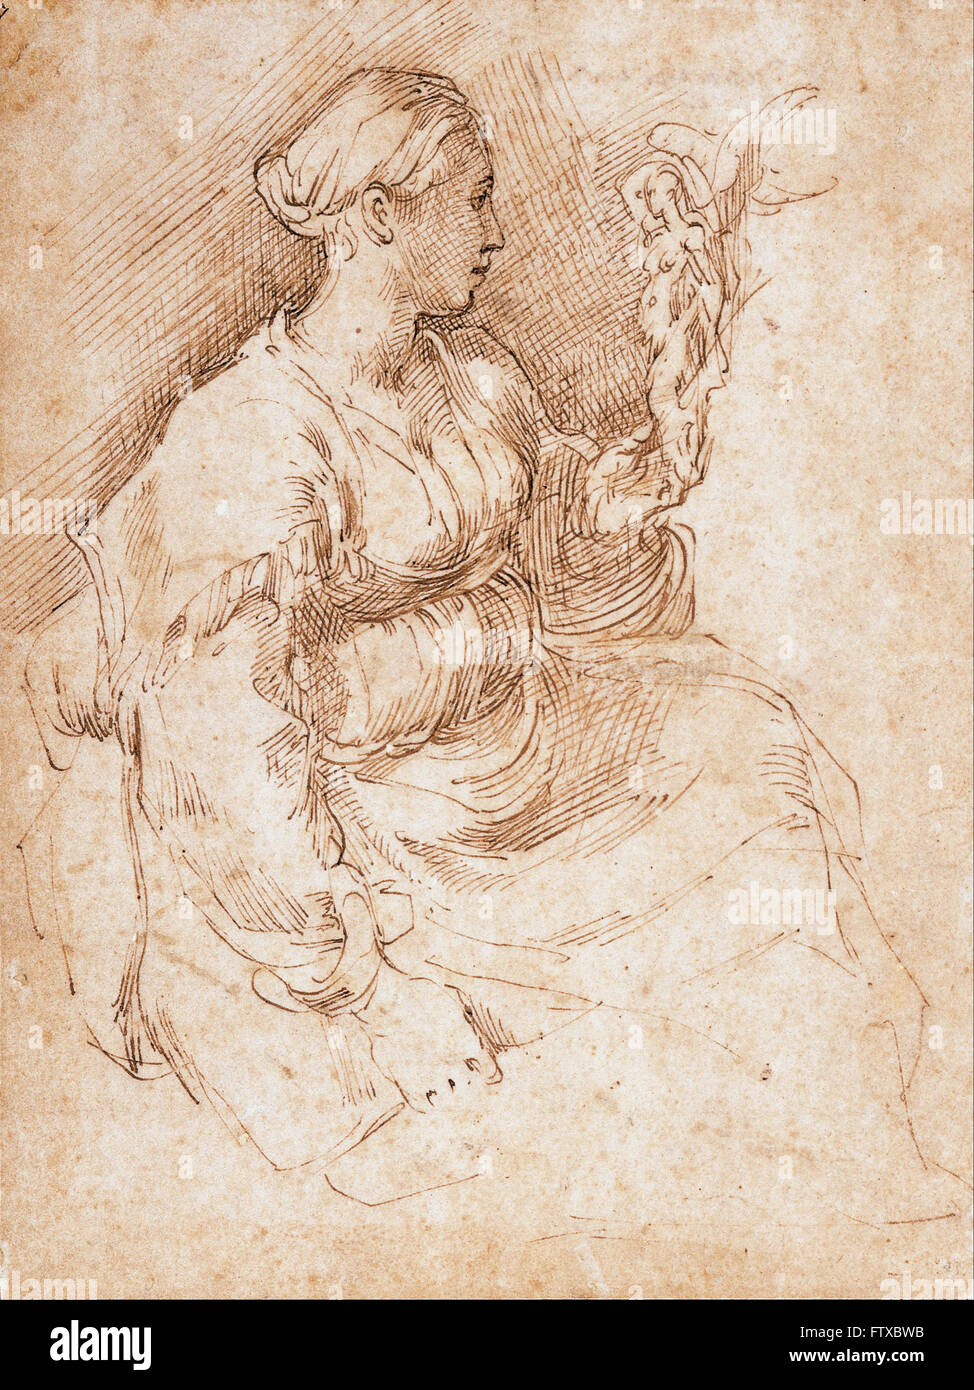 Parmigianino - Mujer Sentada sosteniendo una estatuilla de la Victoria - Museo de Arte de Cincinnati Foto de stock